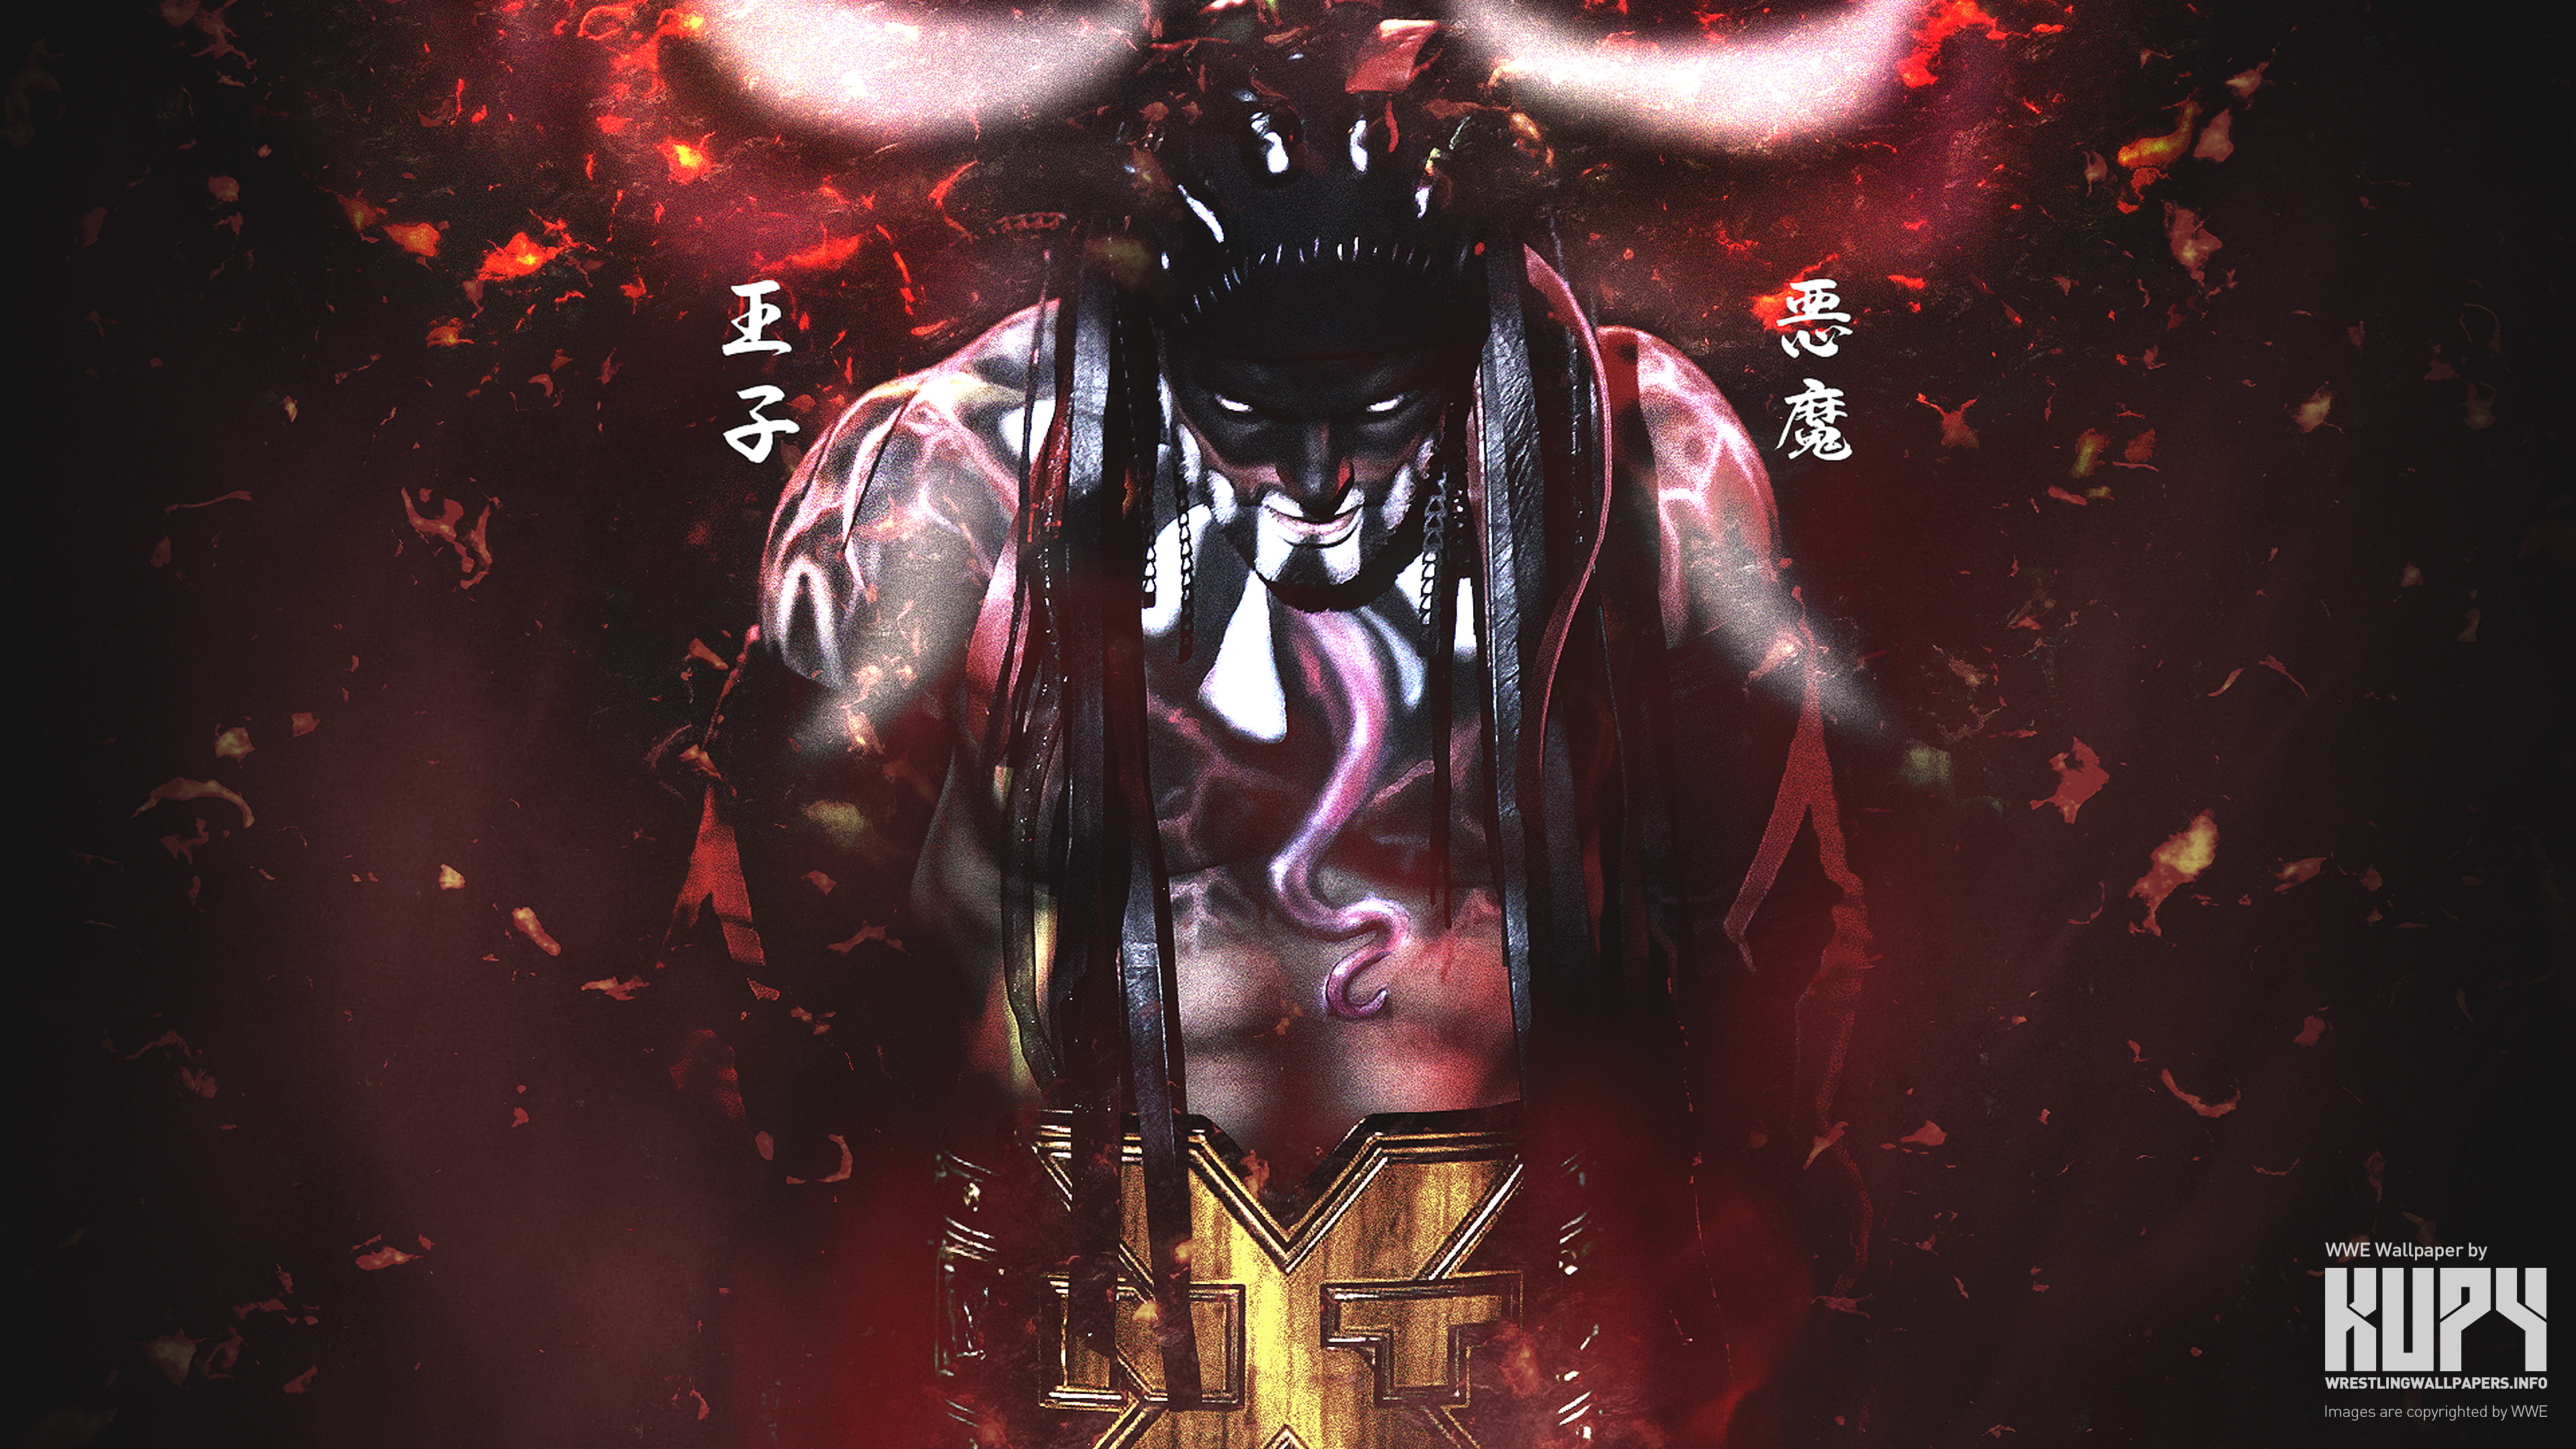 NEW Finn Balor NXT Champion wallpaper! - Kupy Wrestling Wallpapers